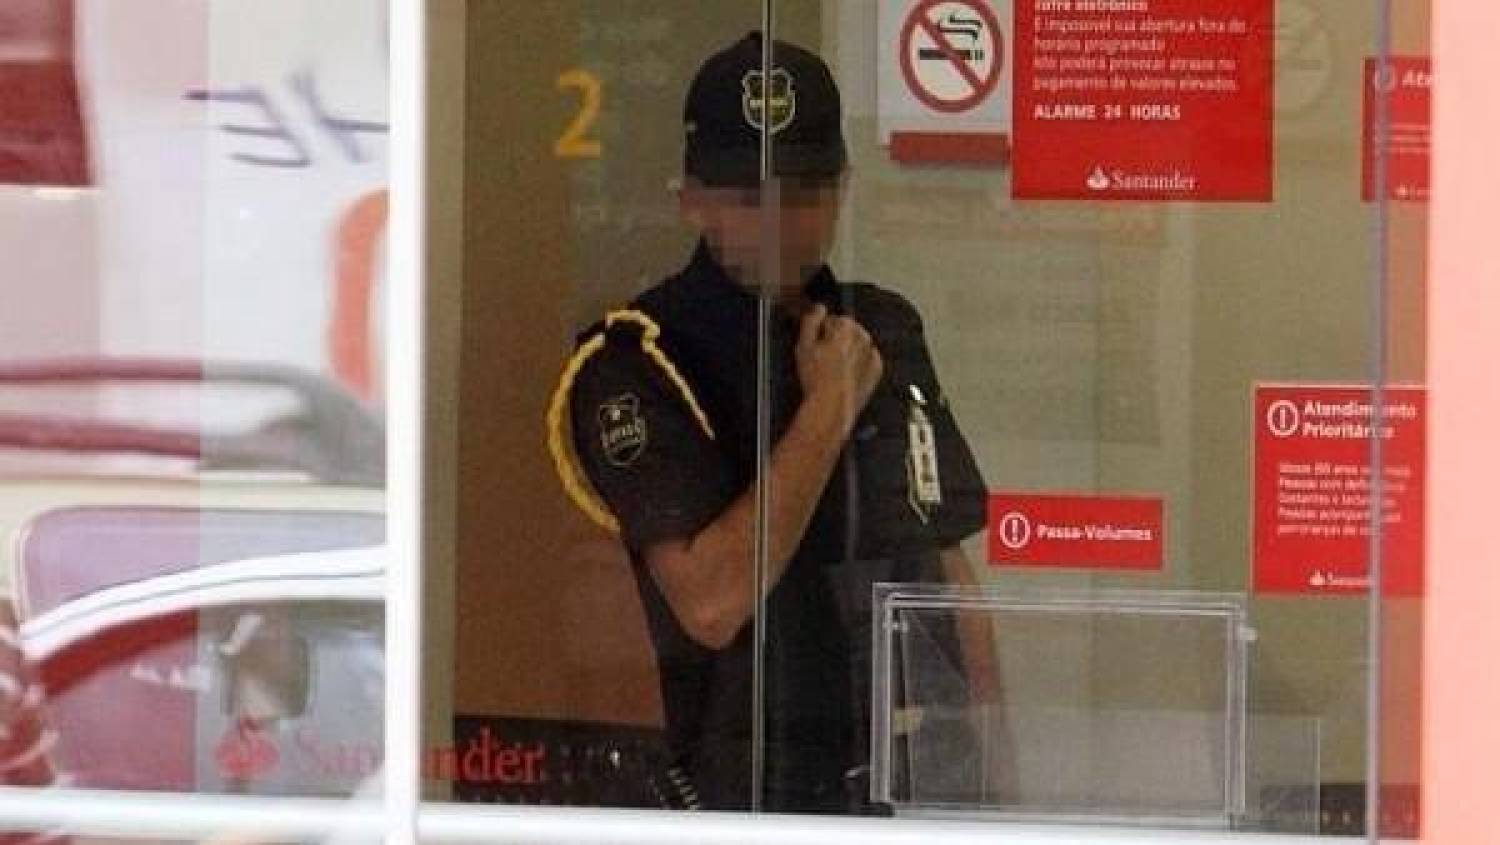 Vigilantes do Santander são proibidos de almoçar